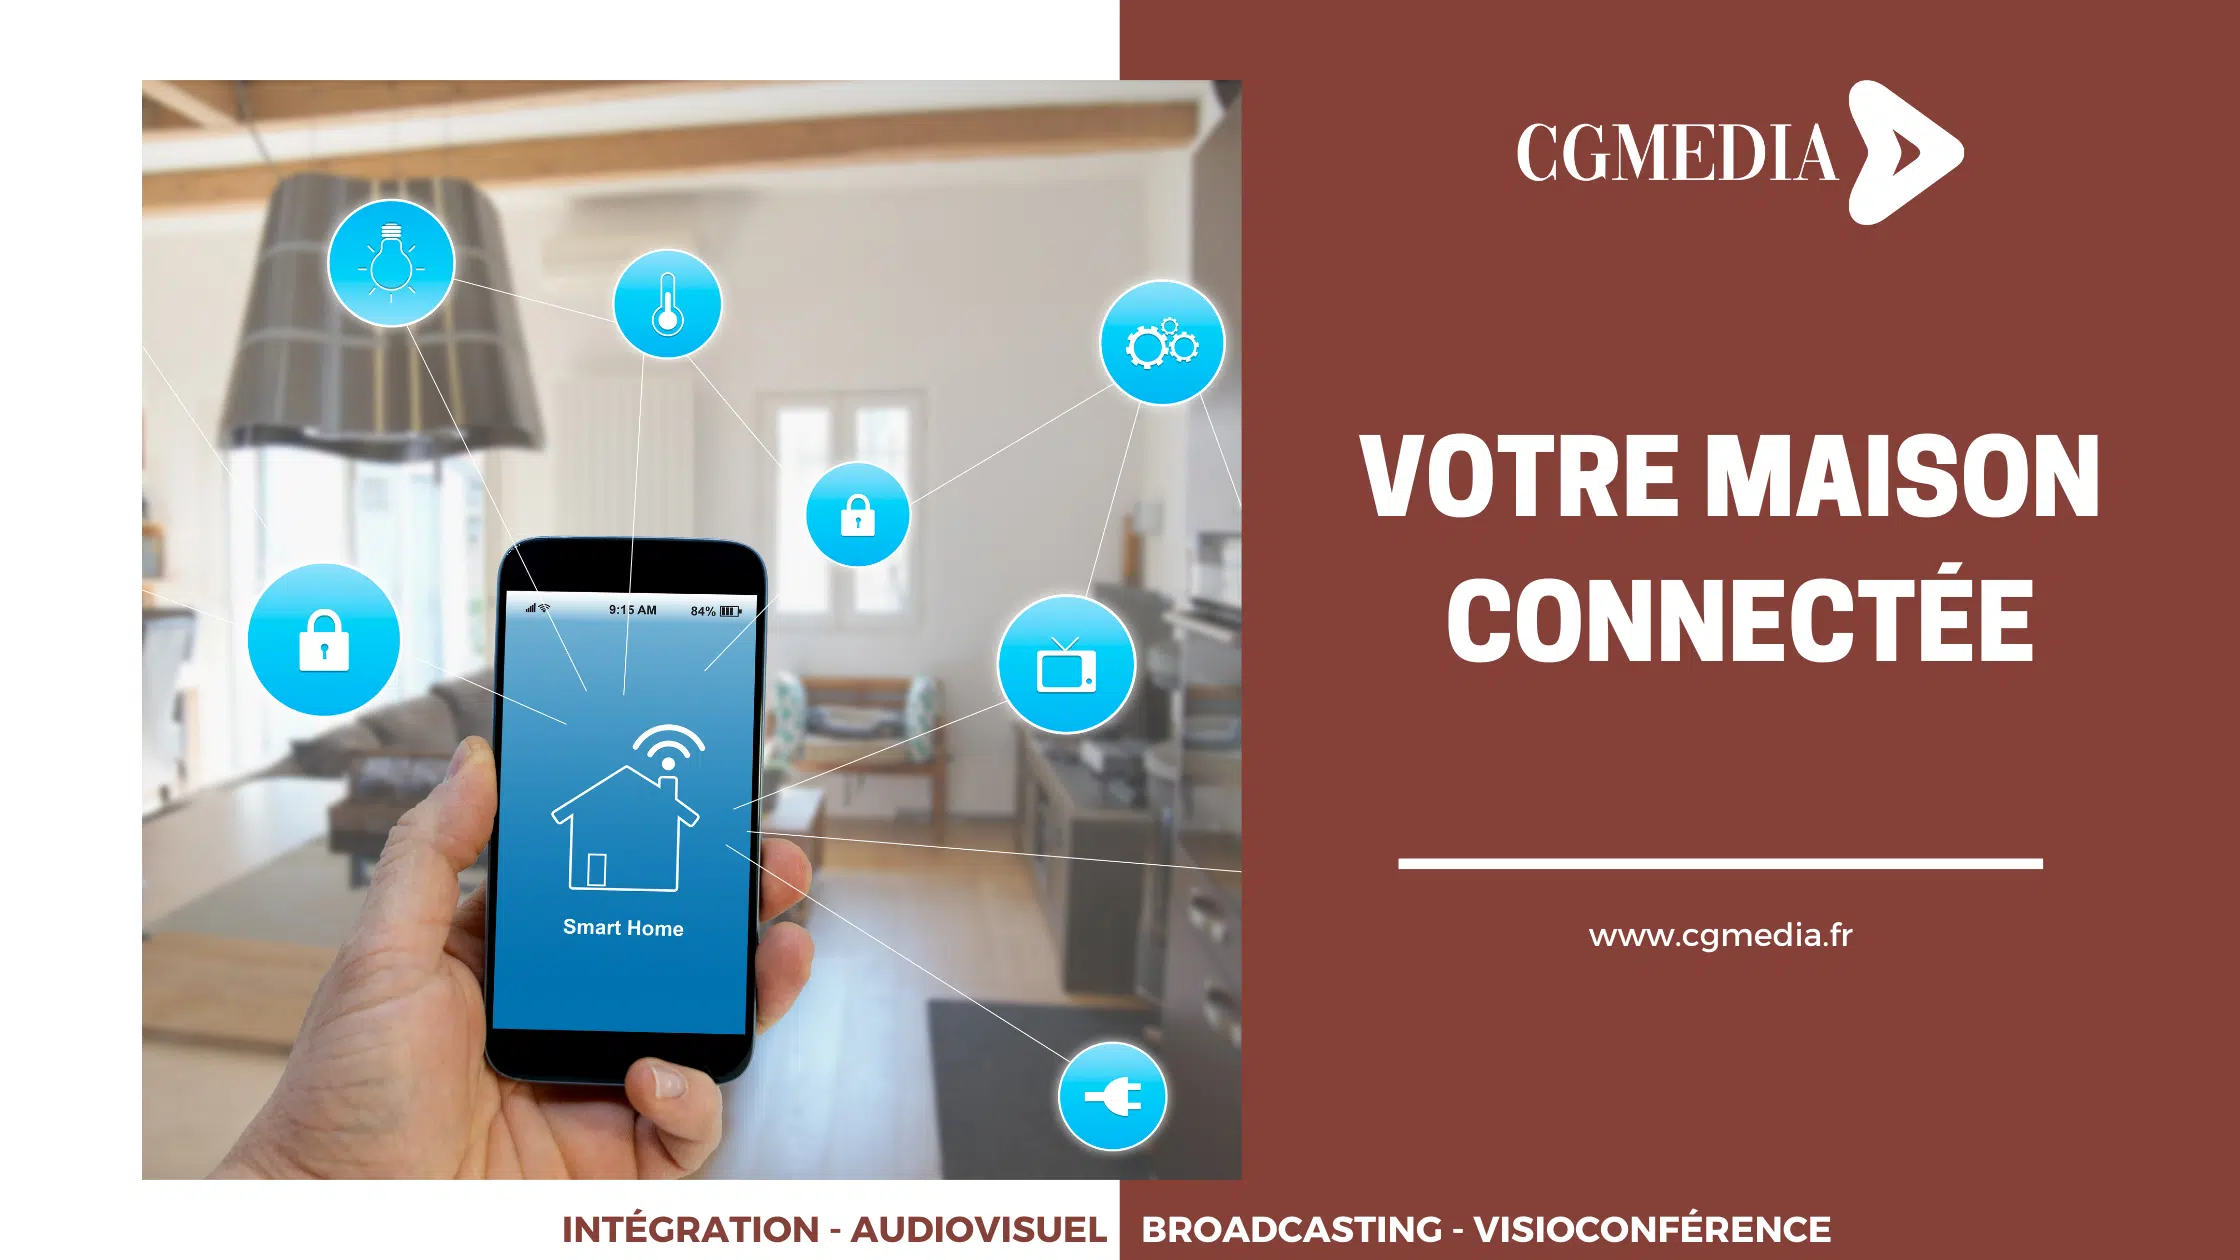 Votre maison connectée avec CGMEDIA